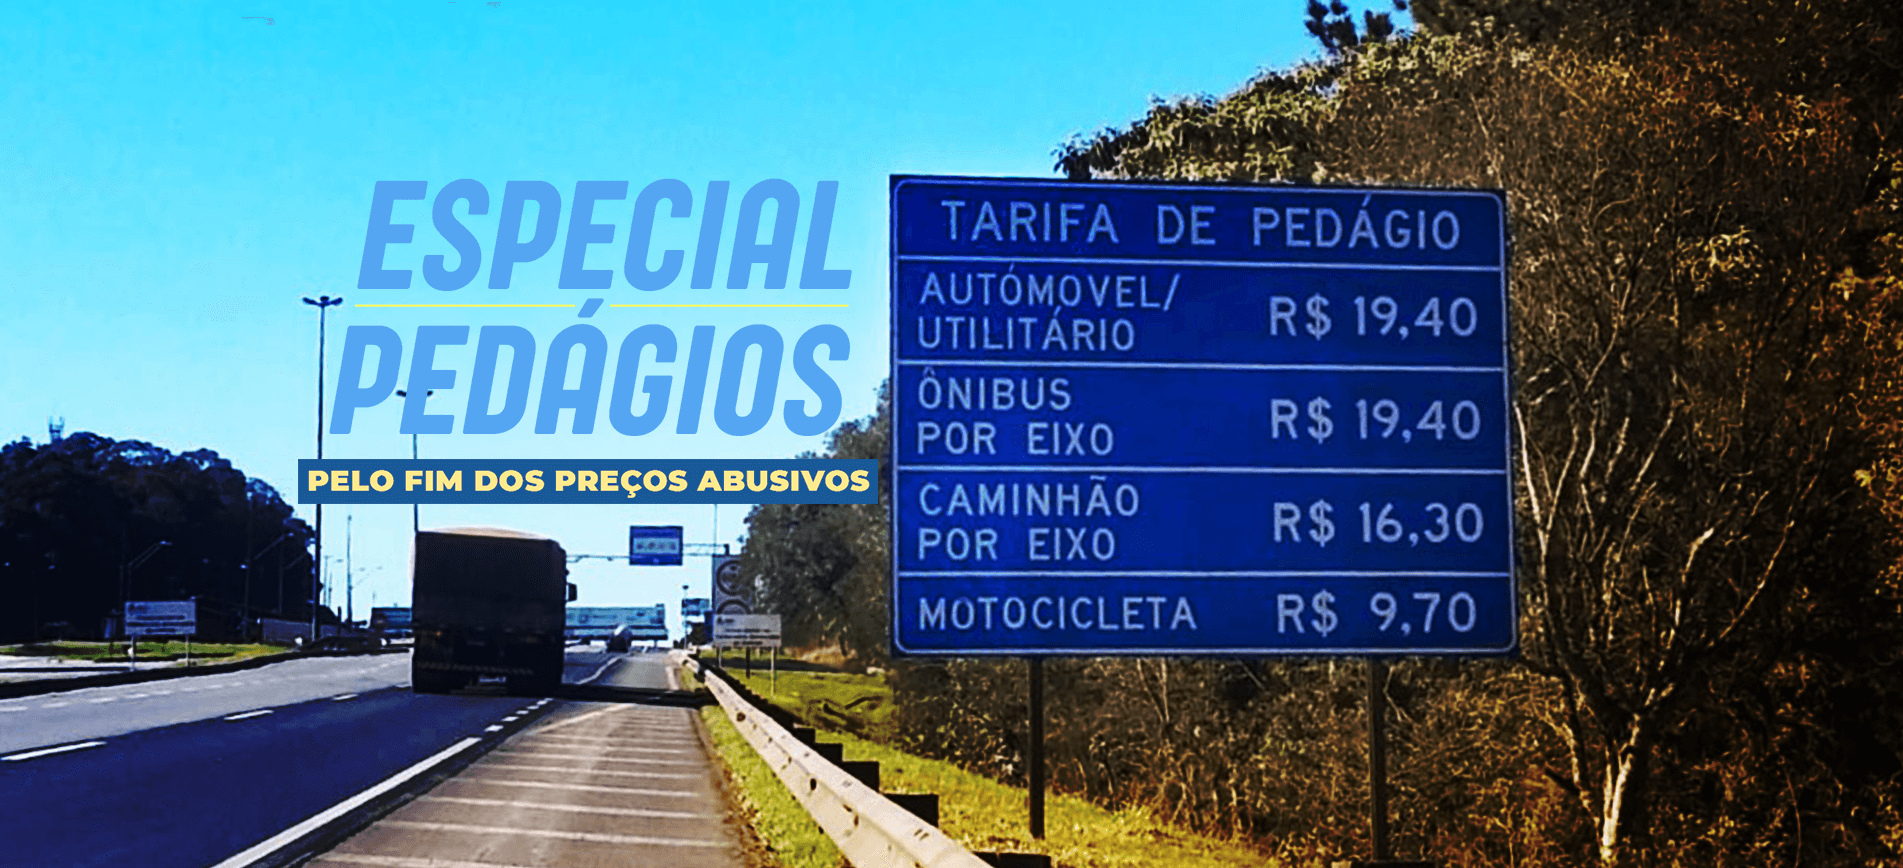 banner 01 pedagios - Deputado Sérgio Souza - Paraná